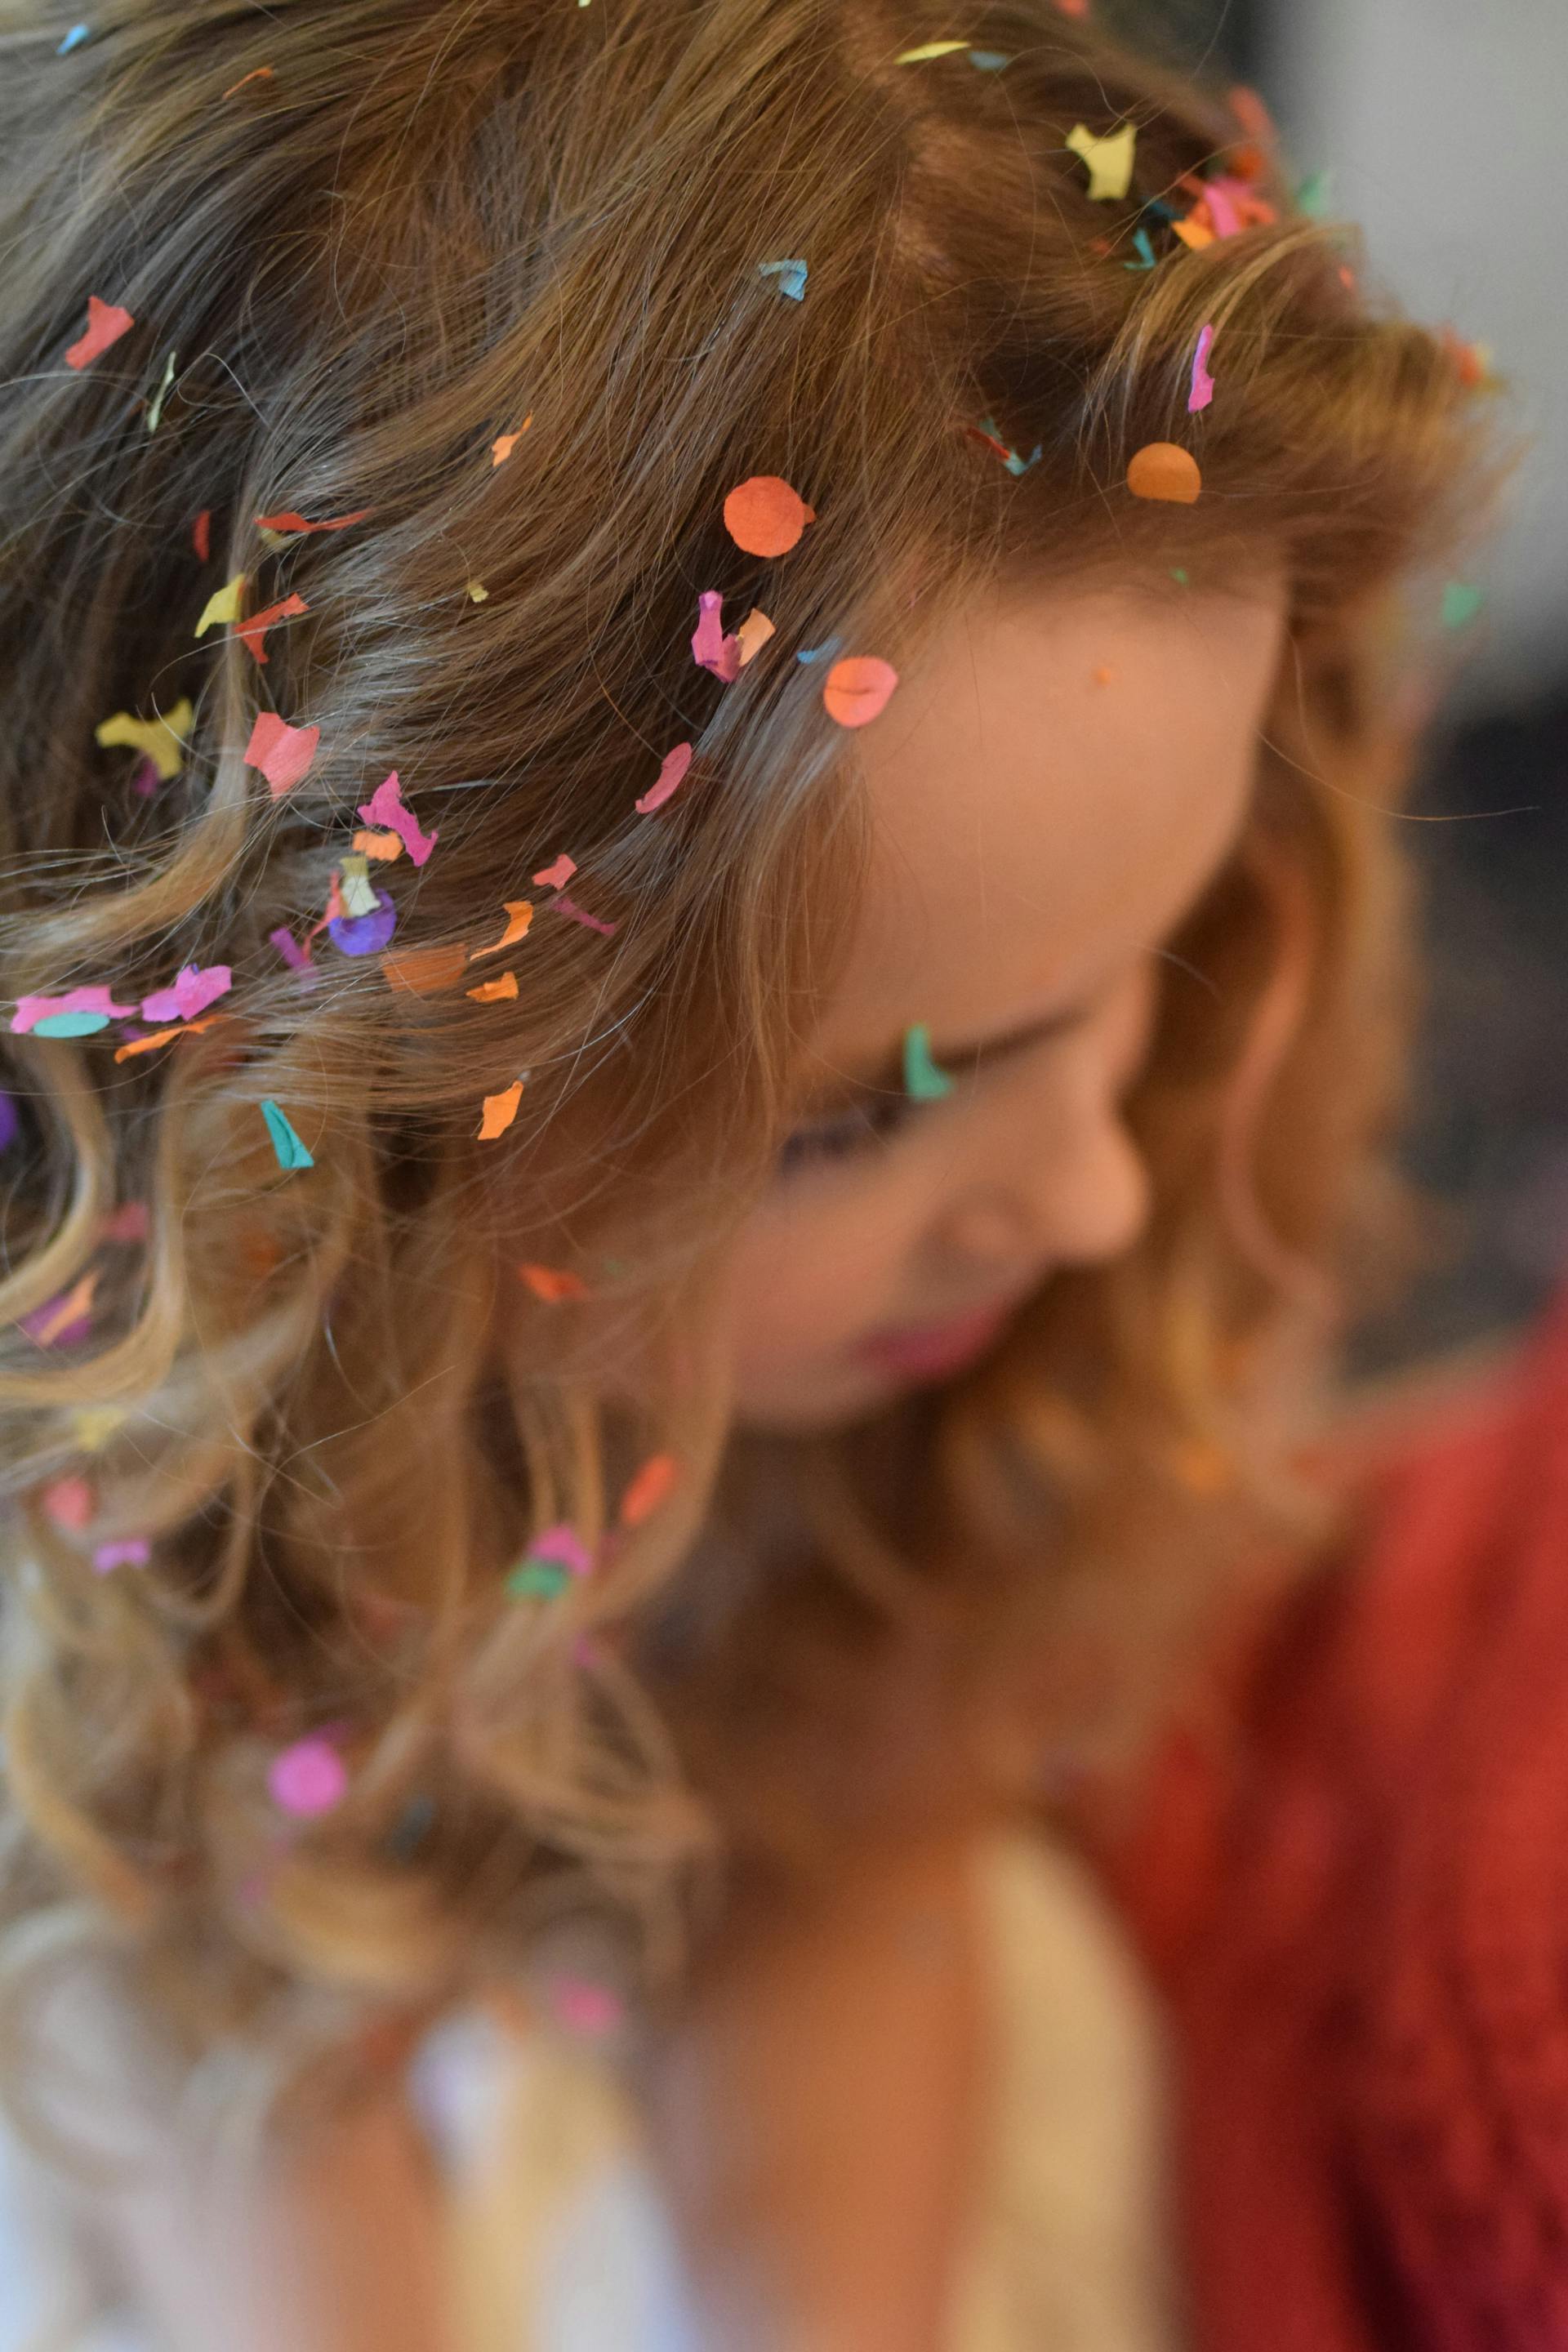 Une femme aux cheveux bruns avec des confettis dans les cheveux | Source : Pexels